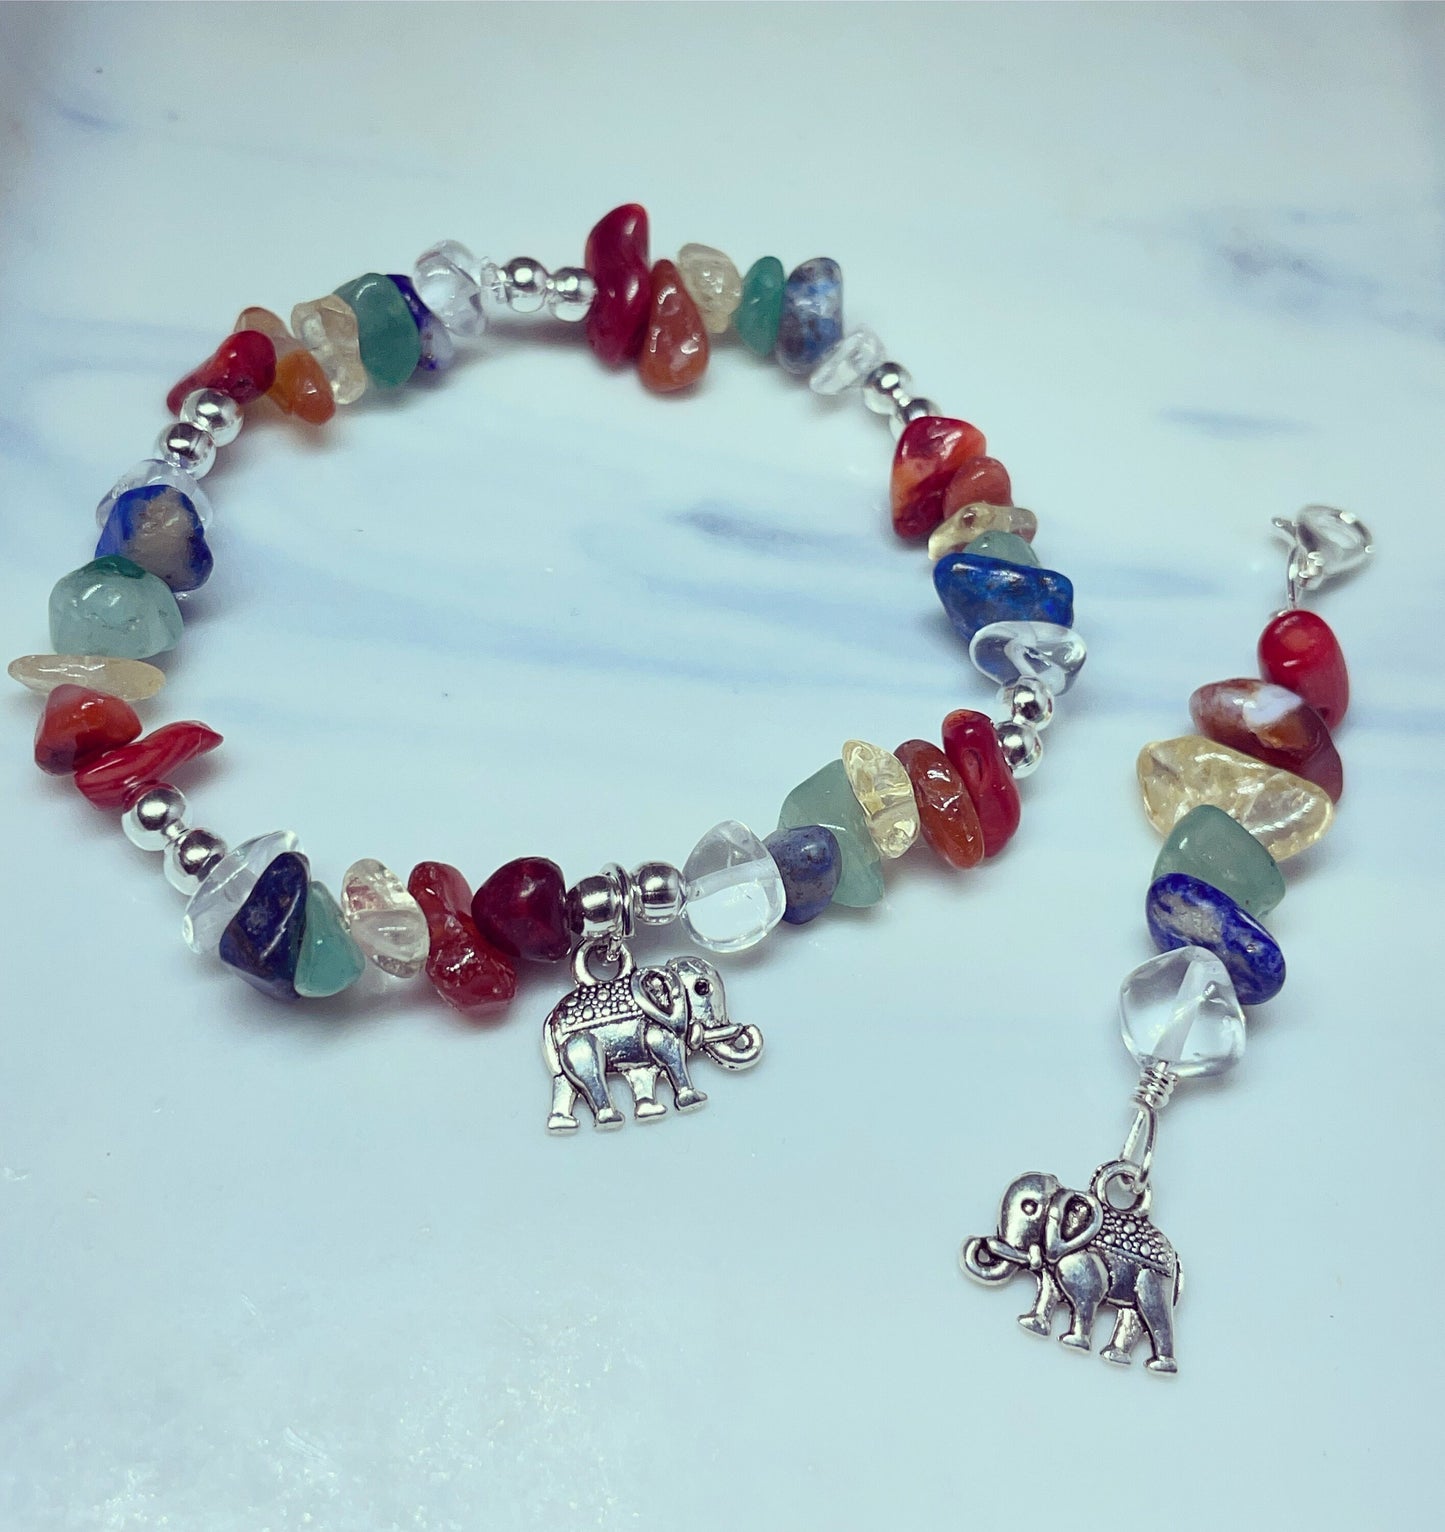 Chakra elephant charm crystal bracelet and bag/purse charm